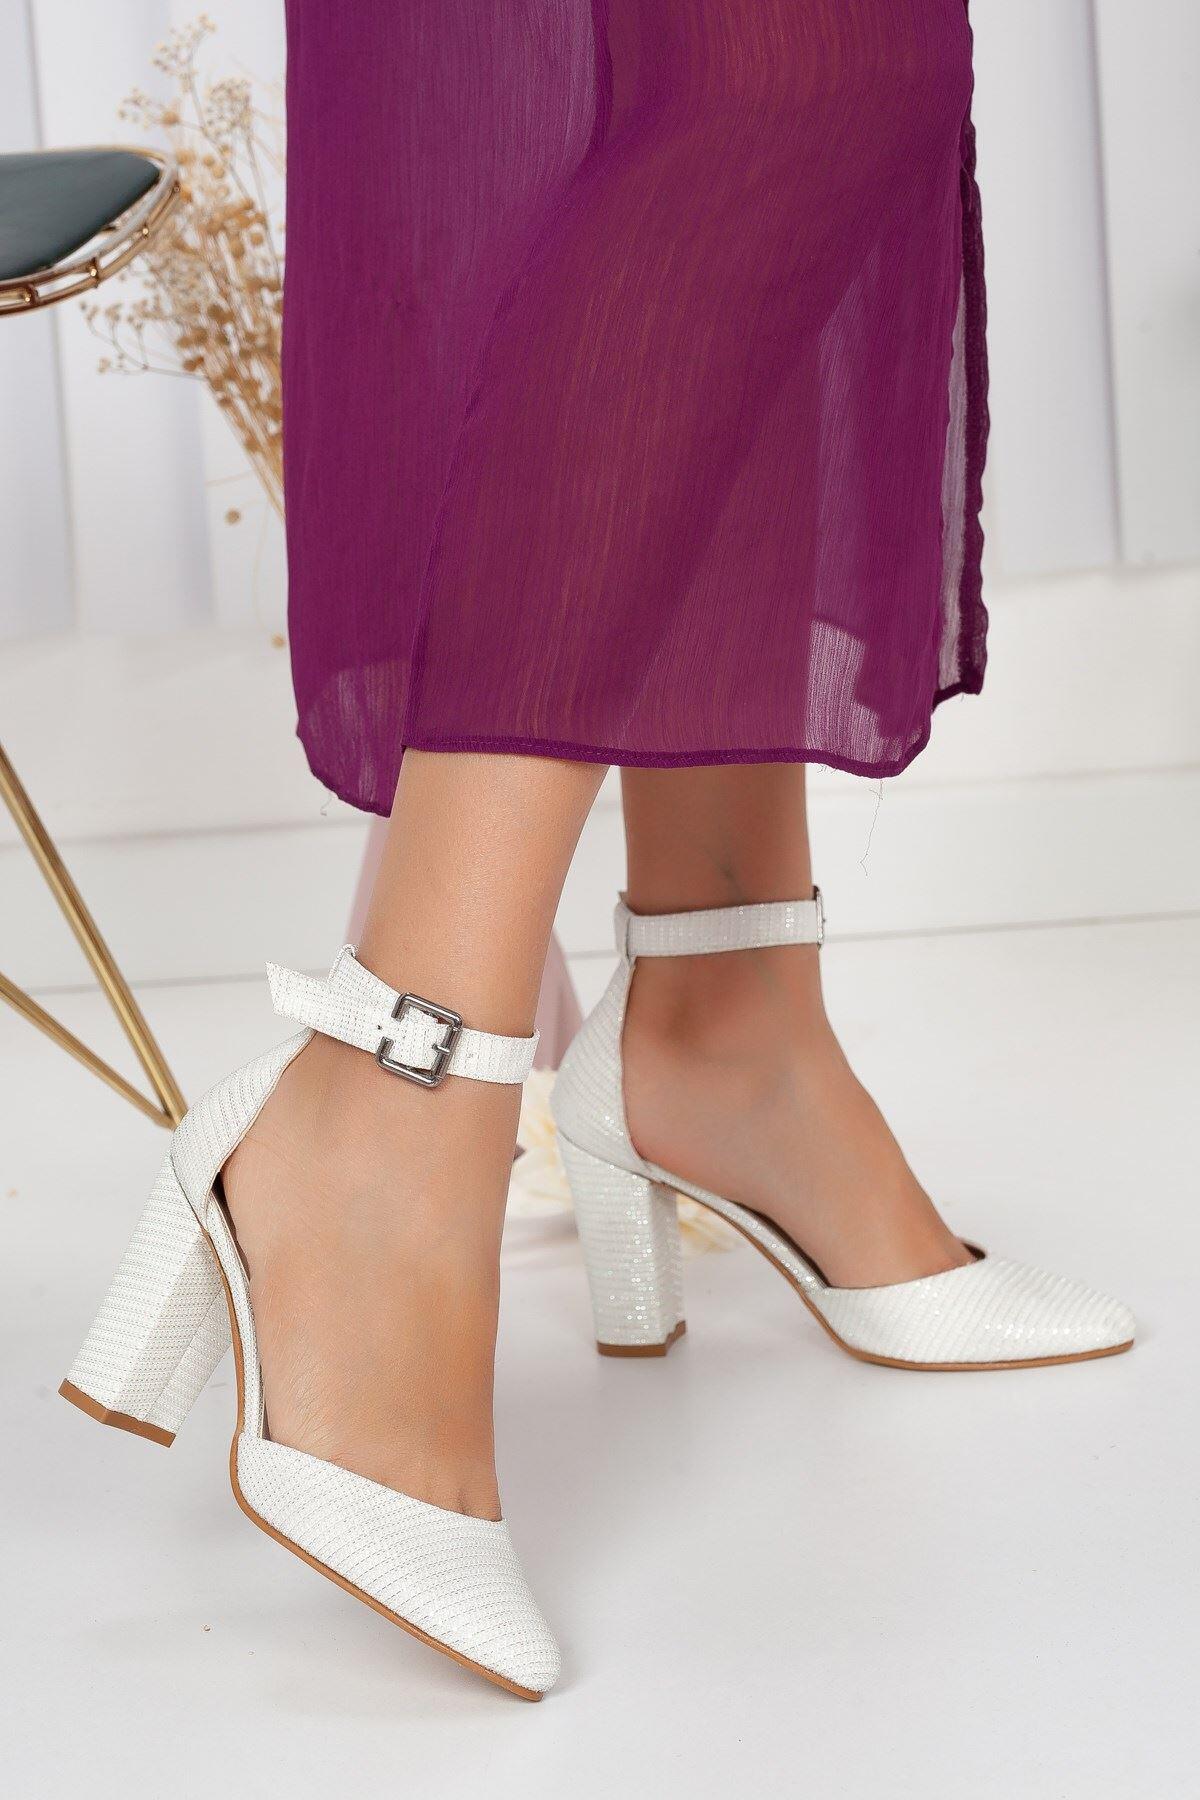 Lole Beyaz Simli Topuklu Ayakkabı Beyaz | Patırtı